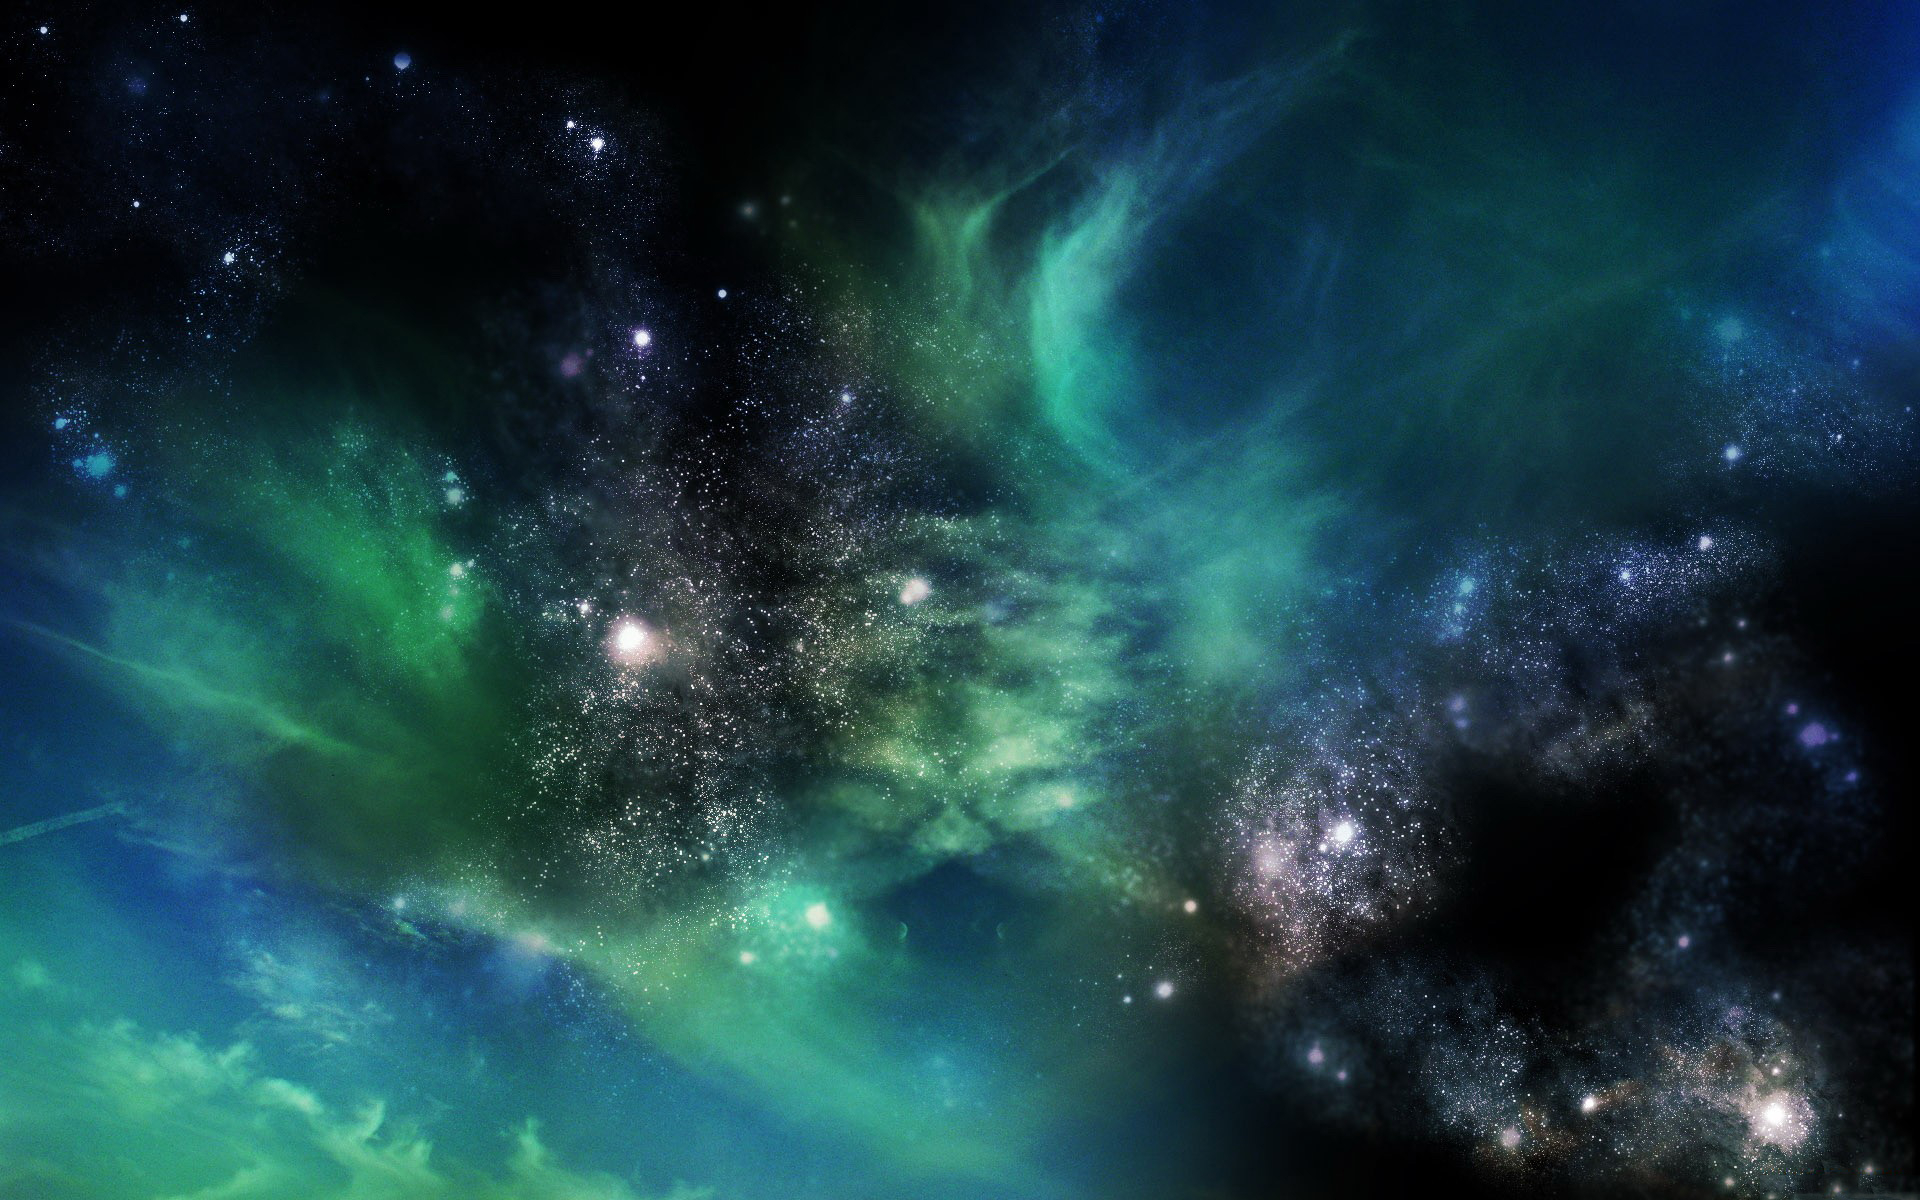 Hình nền Galaxy Full HD: Bạn đang tìm kiếm một hình nền tuyệt đẹp và sắc nét để thay đổi trên máy tính của mình? Hãy khám phá ngay hình nền Galaxy Full HD với những đường nét cực kỳ tinh tế và sống động. Với một chút khám phá, bạn sẽ tìm thấy bầu trời sao trở nên rực rỡ và huyền ảo trên nền đen.